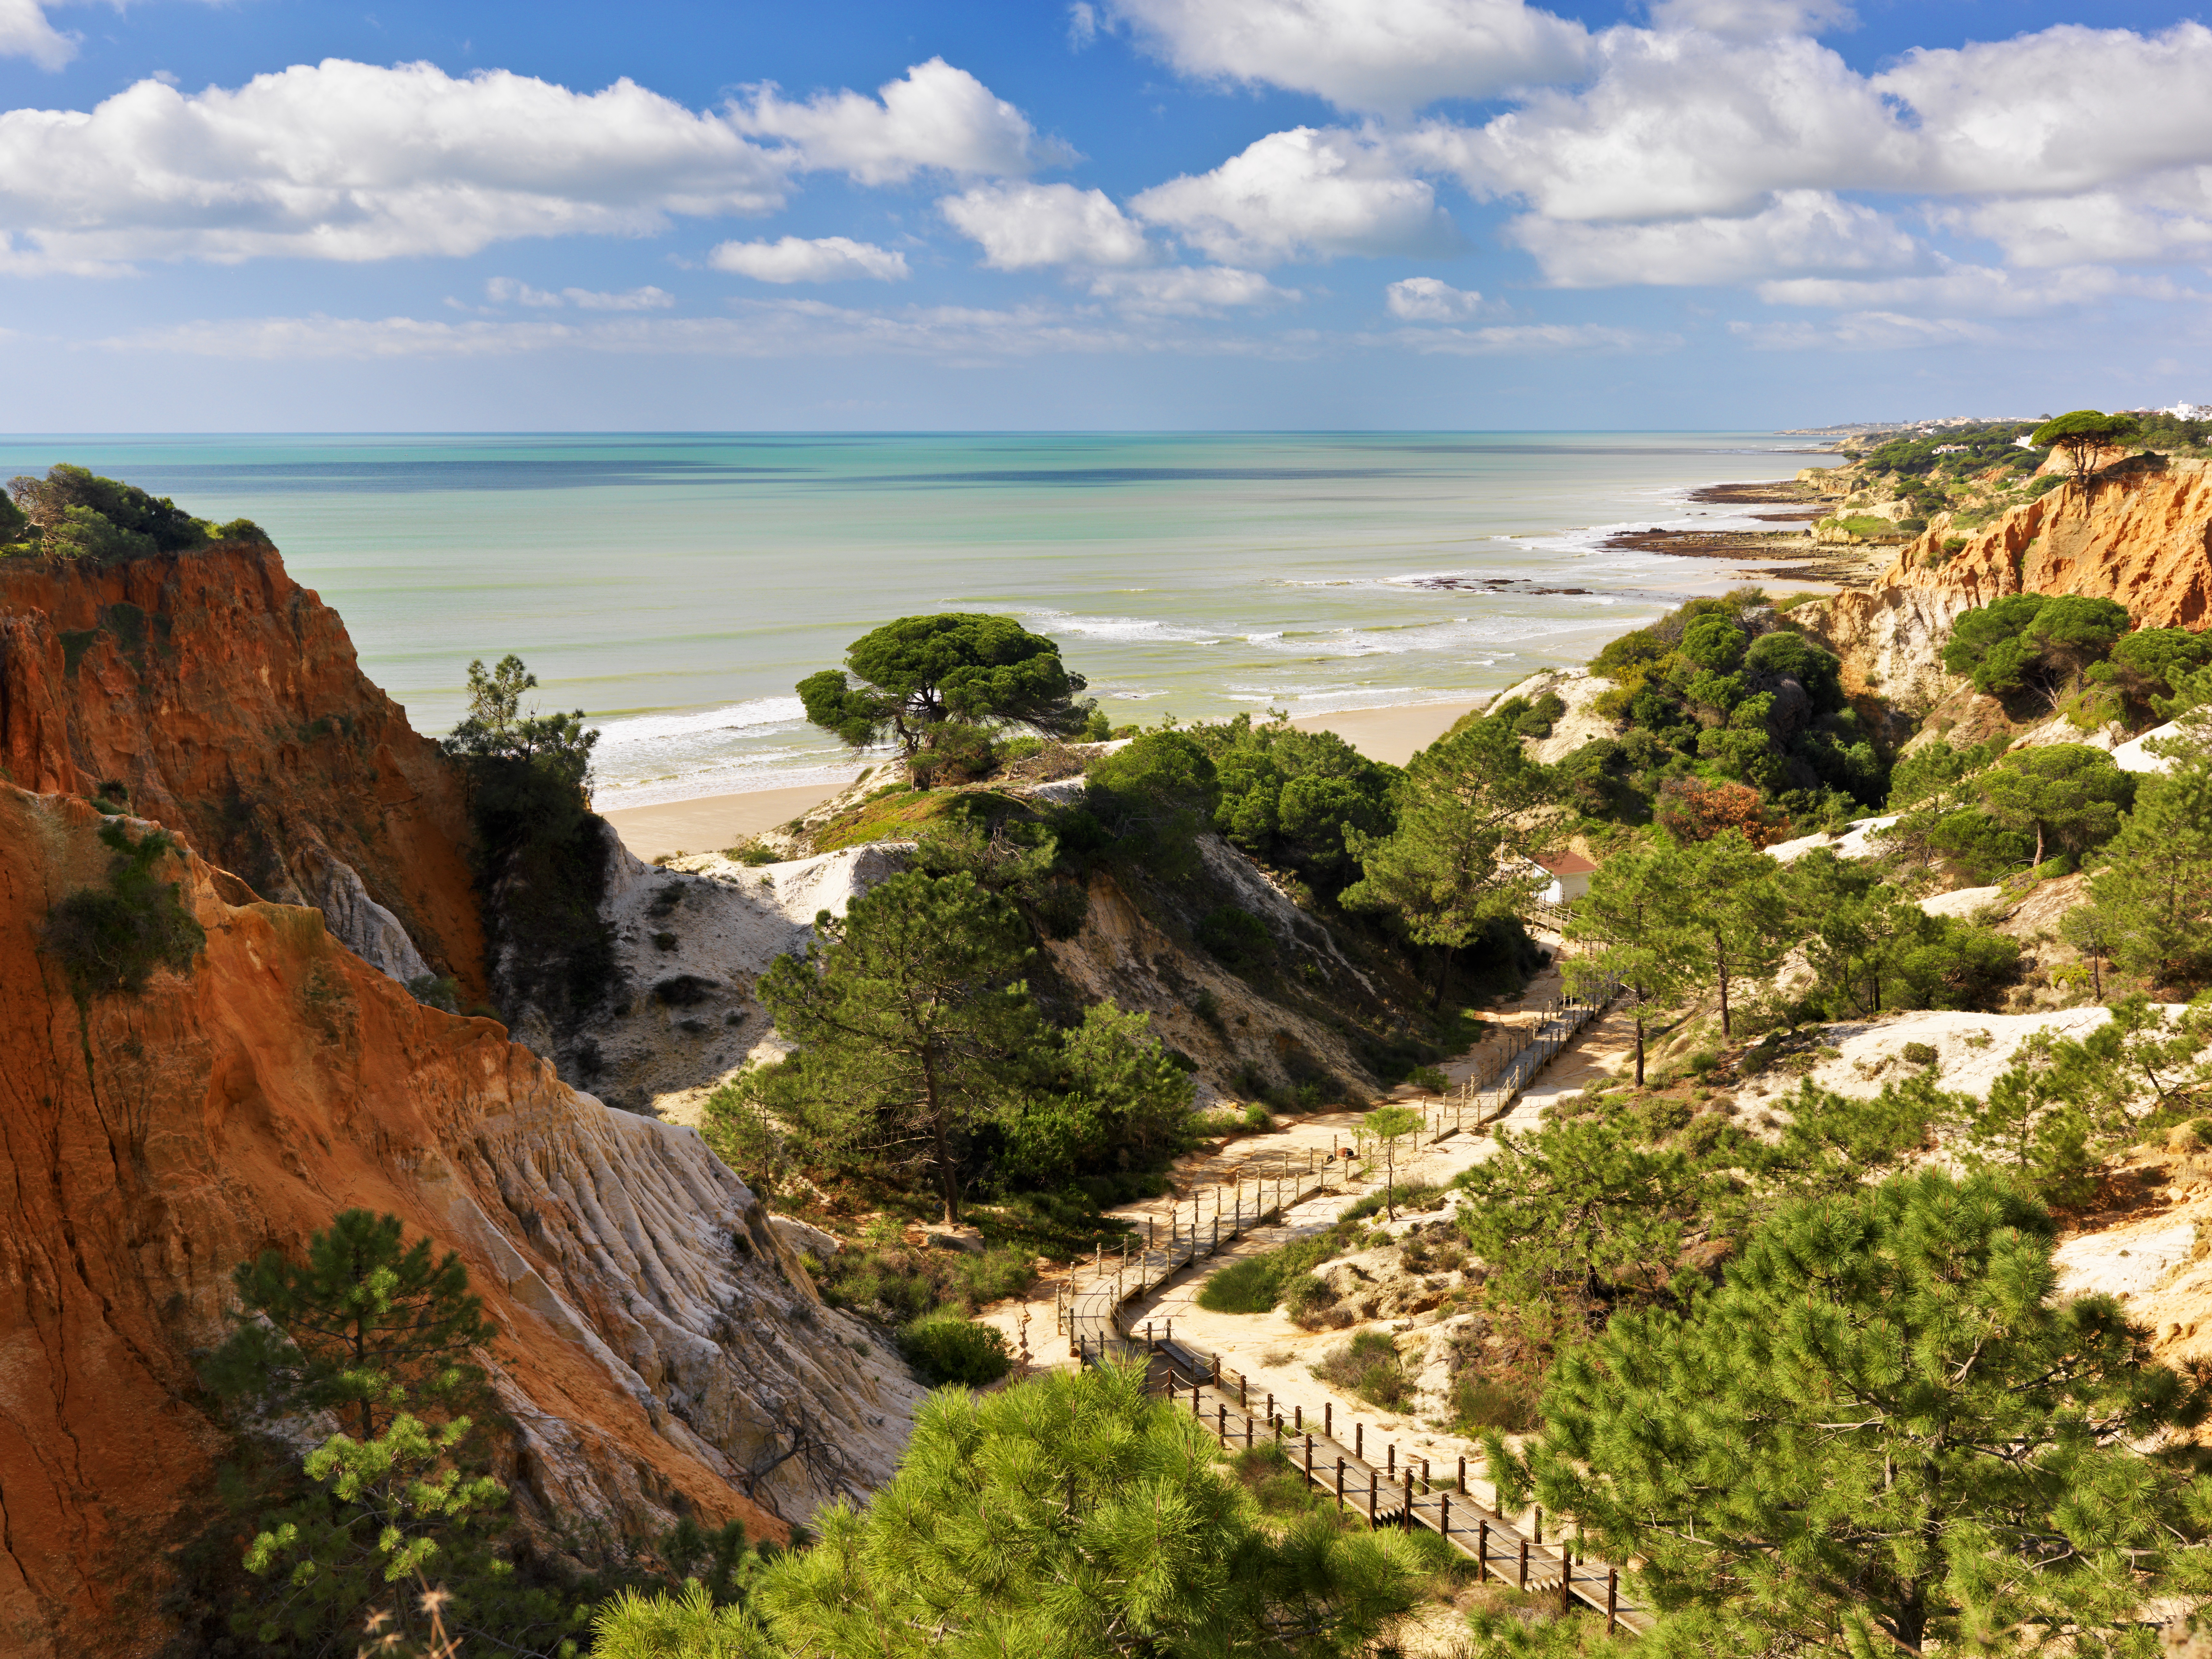 Bringen Sie Ihre Kinder zum Tennisspielen mit einem Aufenthalt im 5H Pine Cliffs Resort an der portugiesischen Algarveküste